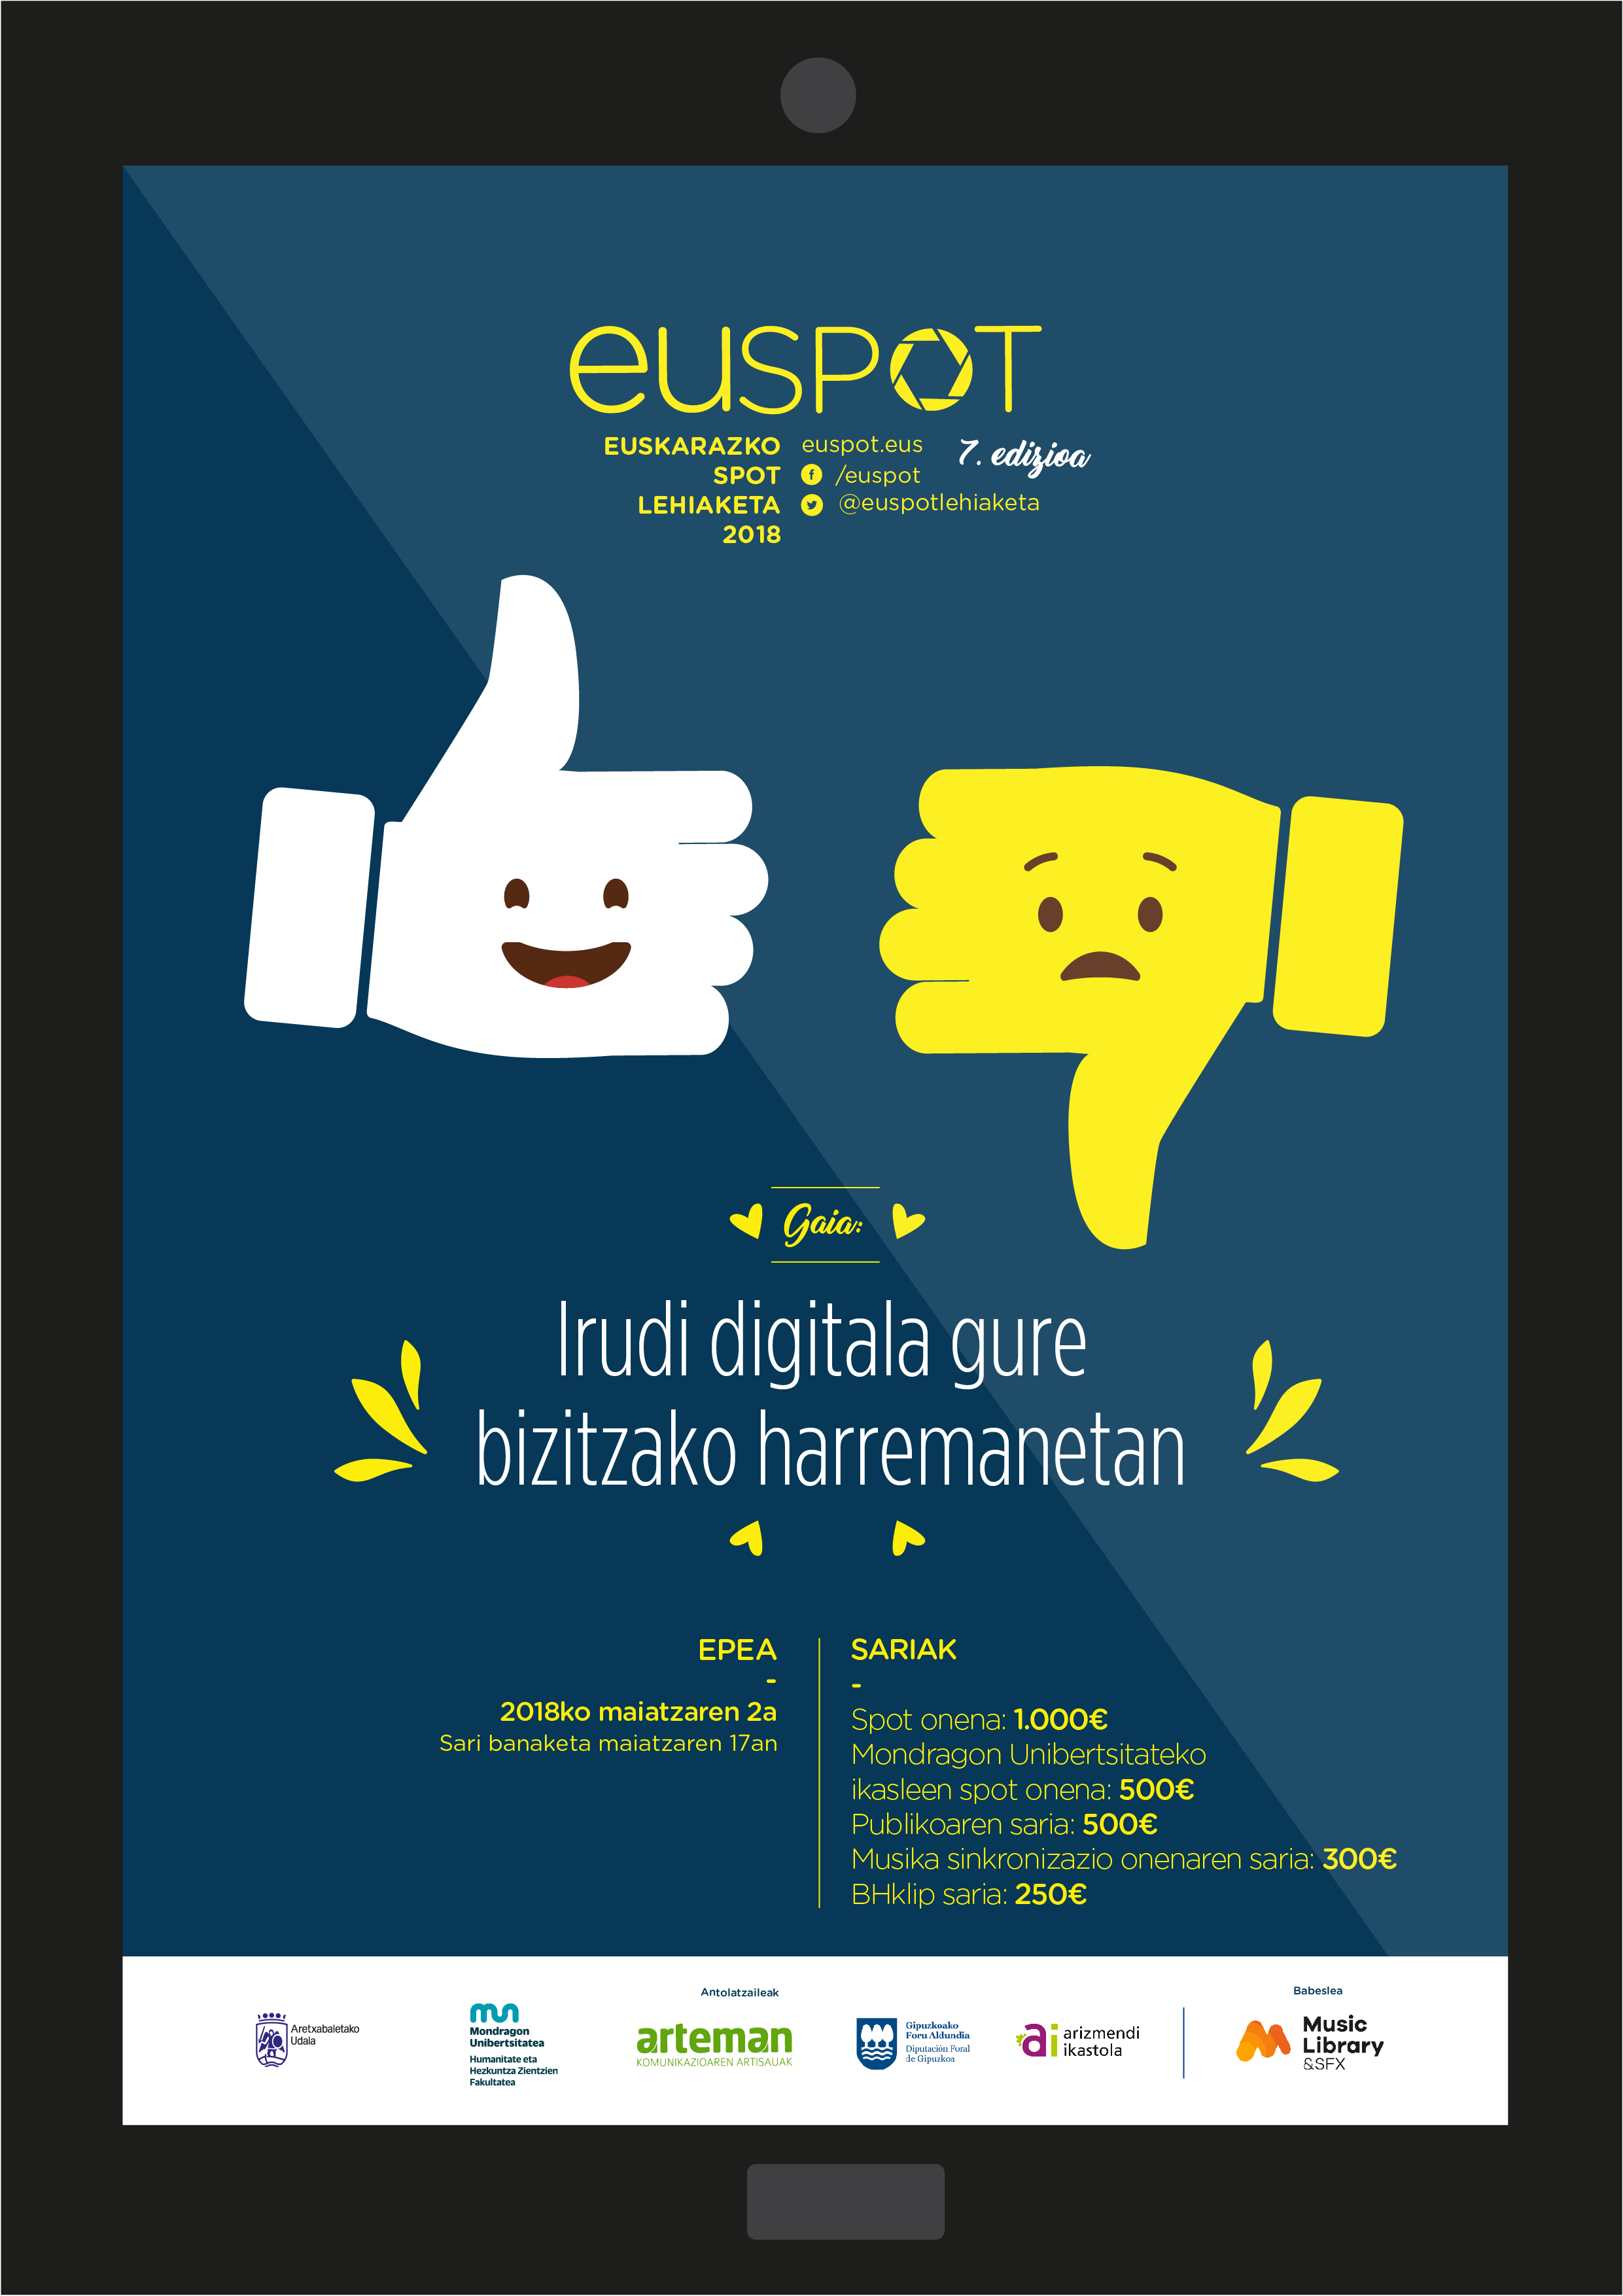 Euspot, euskarazko spot lehiaketaren 7. edizioko gaia "Irudi digitala gure bizitzako harremanetan"  izango da